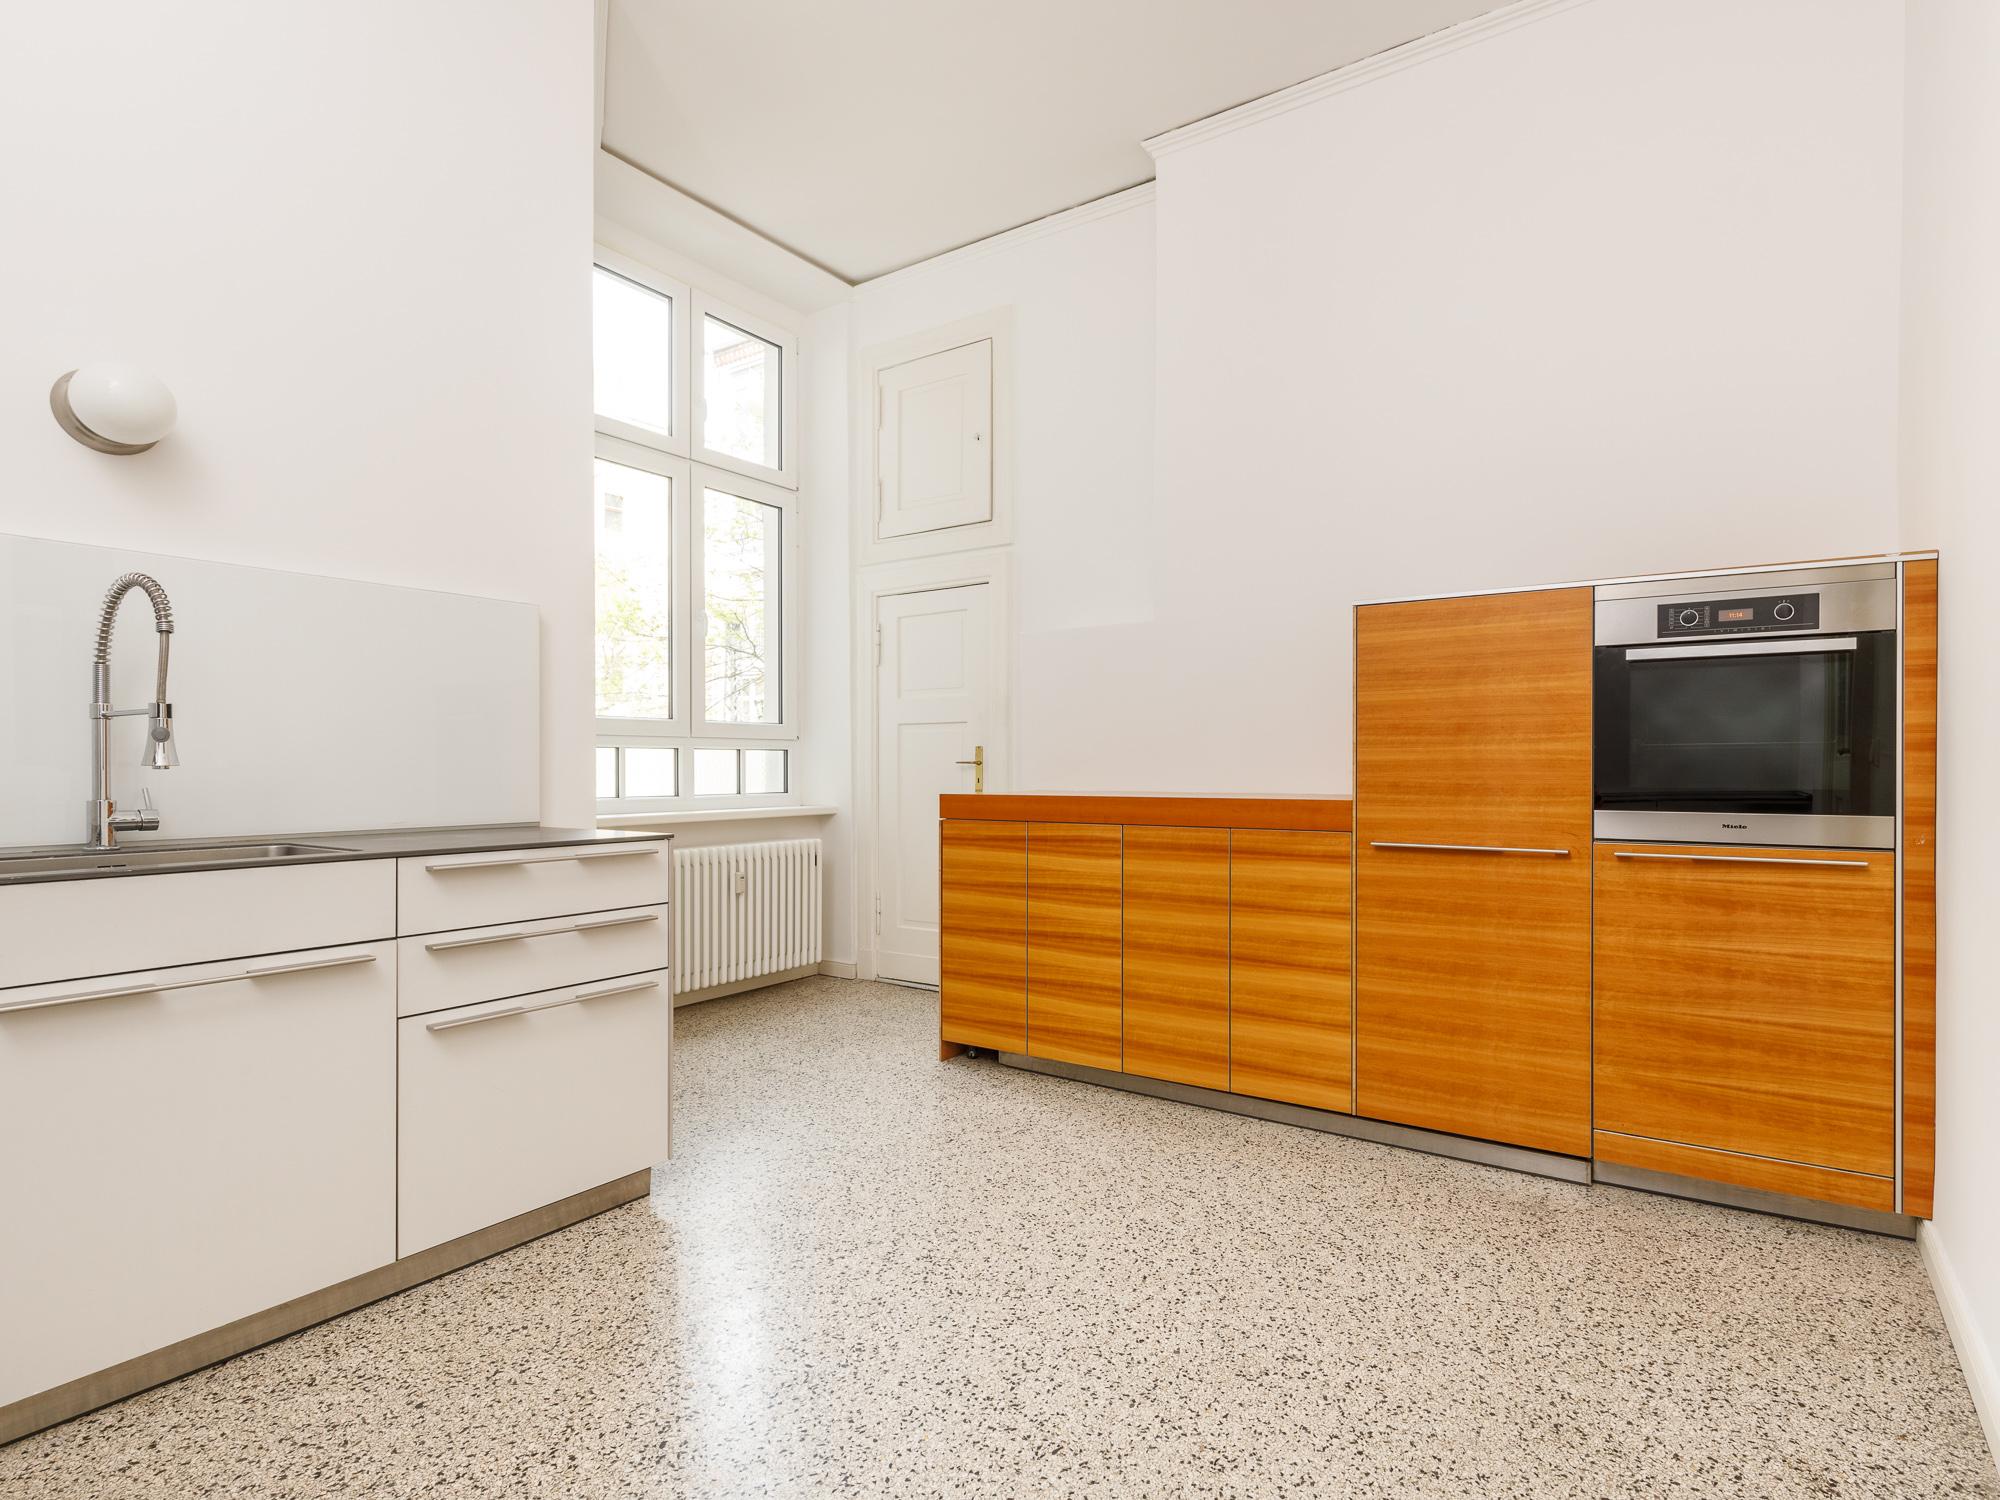 Separater Küchenbereich mit Einbauküche von Bulthaup